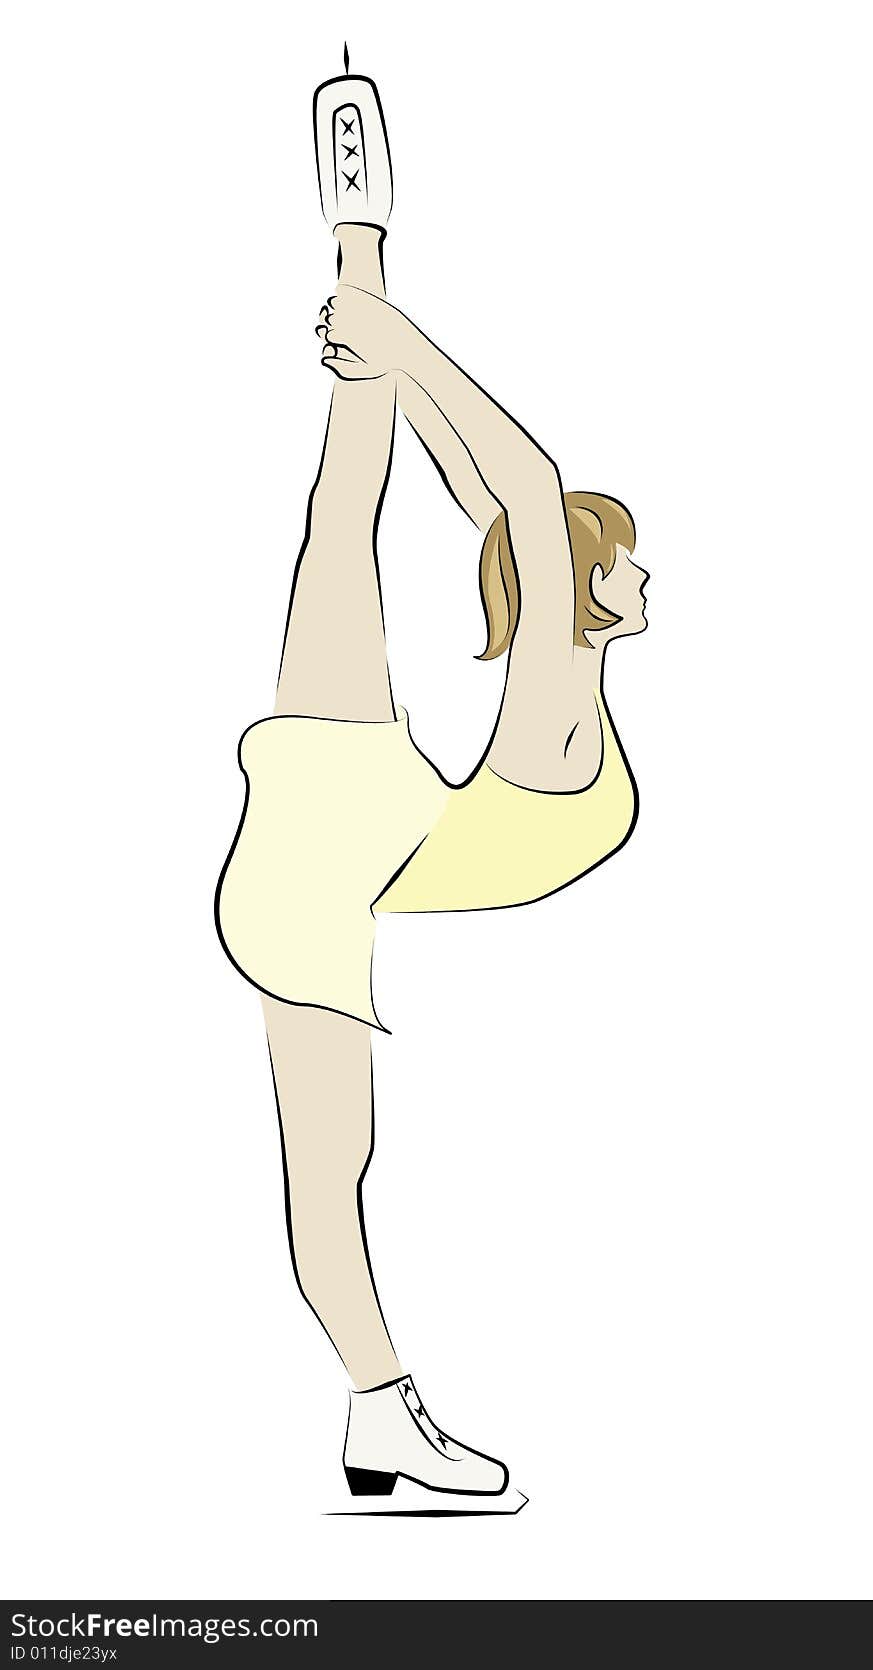 Flexible female figure skater in spiral position